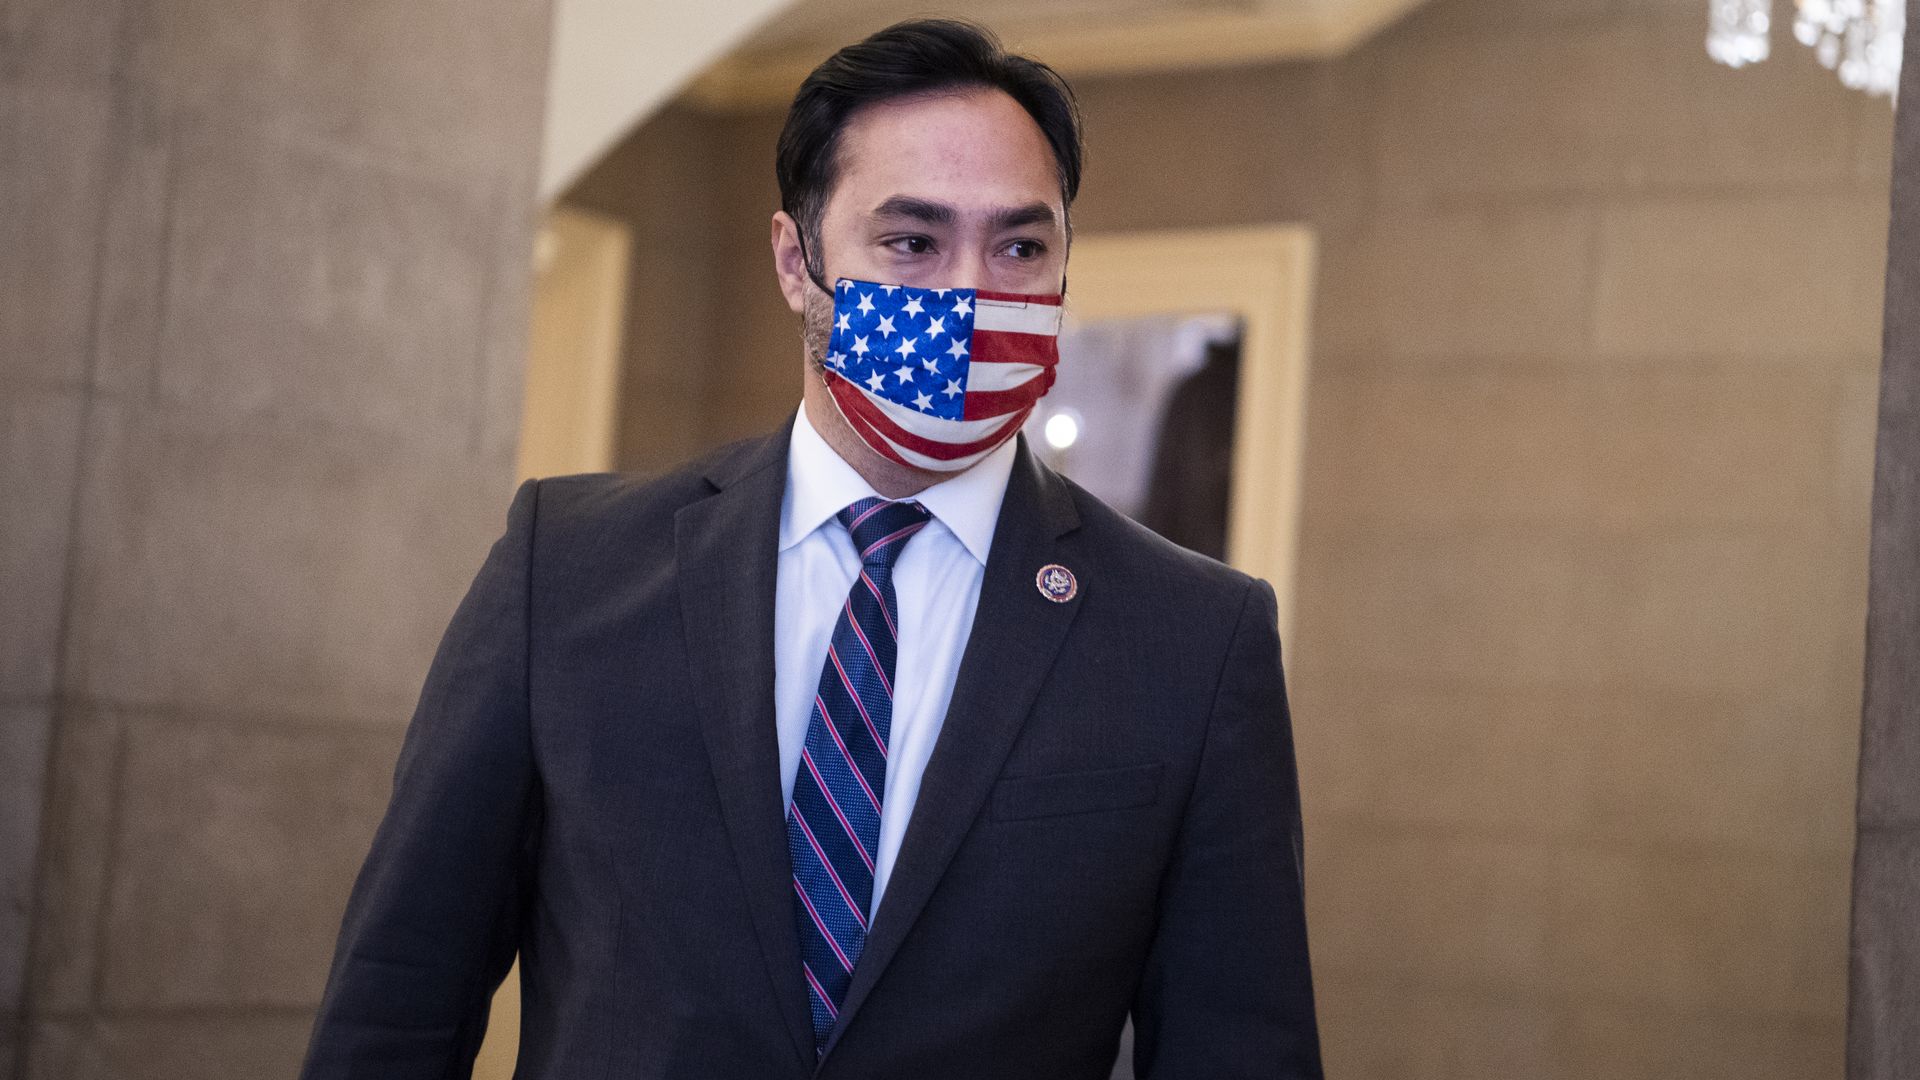 Rep. Joaquin Castro, wearing an American flag face mask, walks through Congress. 